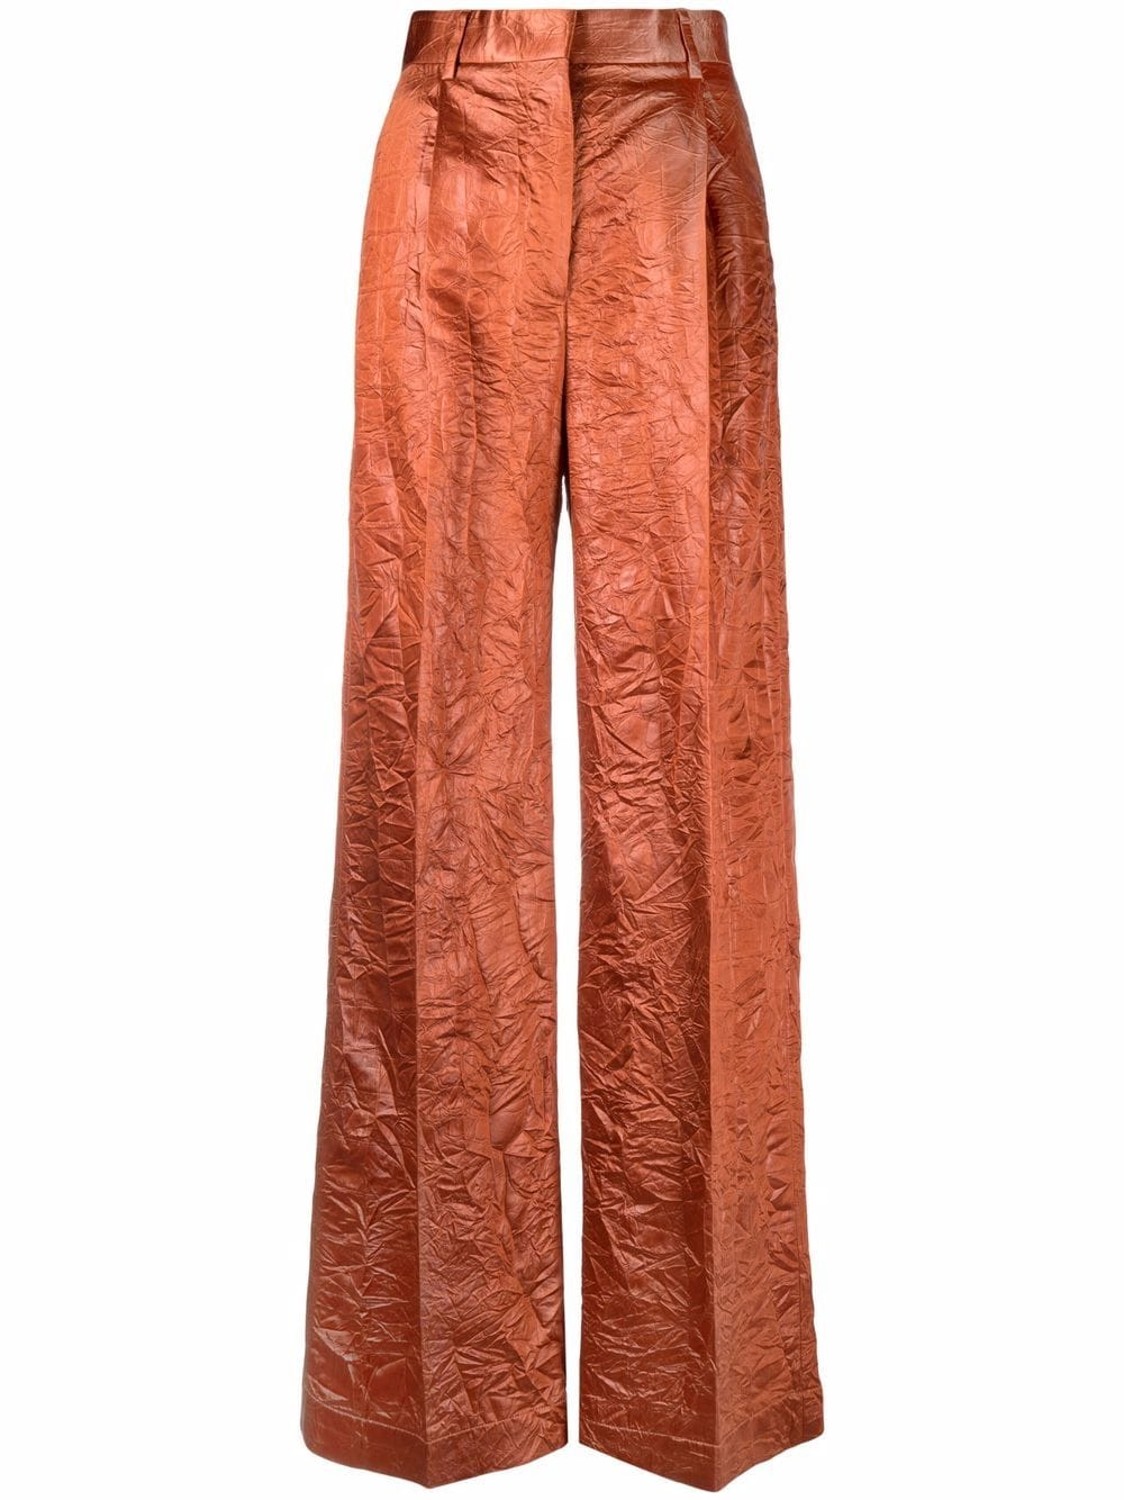 shop MSGM  Pantaloni: Pantaloni MSGM, modello vita alta, gamba ampia, tessuto effetto crinckled, color ruggine, tasche laterali, chiusura frontale con zip e gancio.

Composizione: 100% acrilico. number 2218